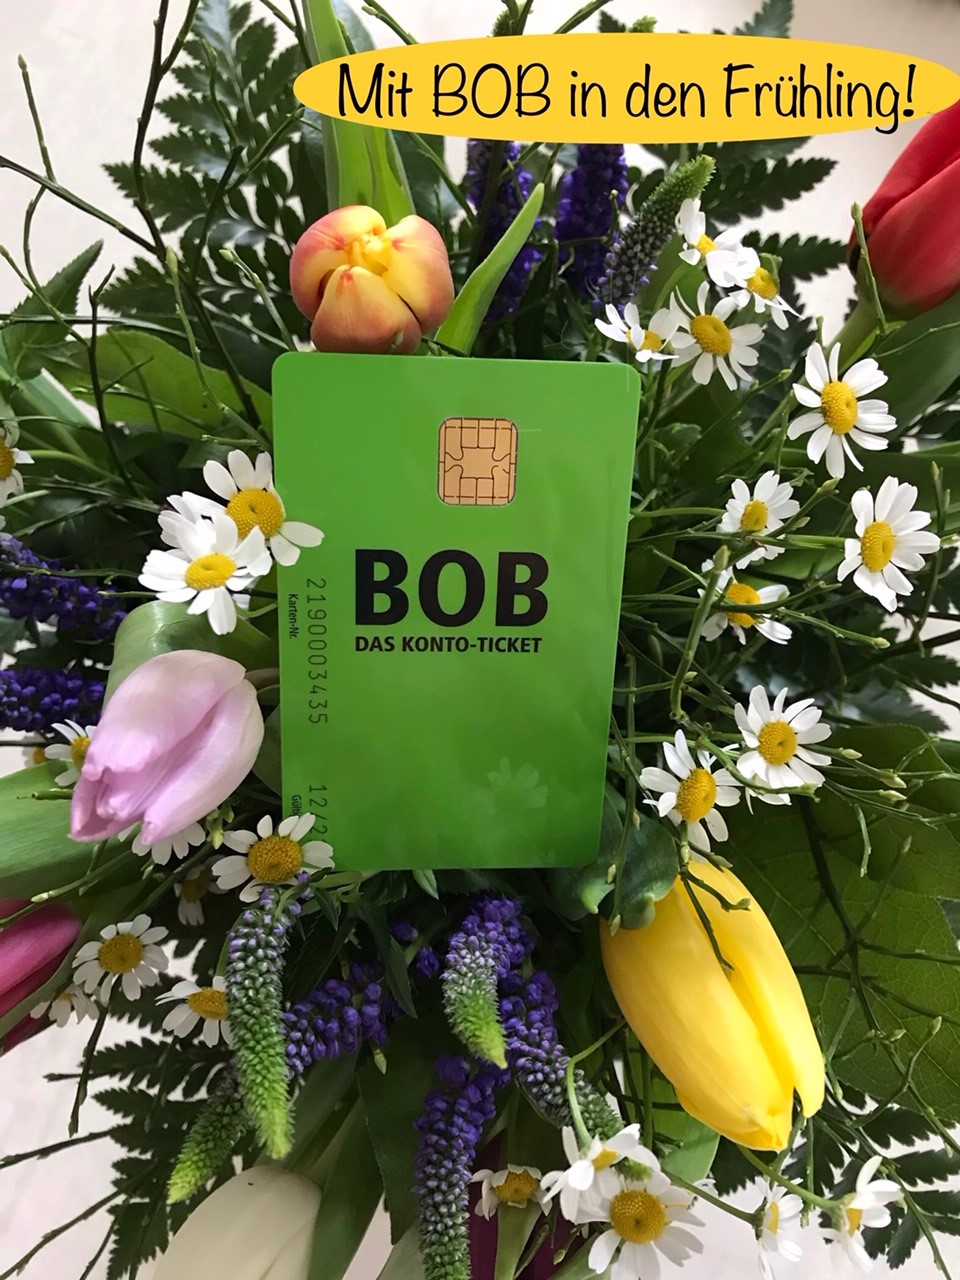 Eine grüne Plastik-Karte im EC-Karten-Format liegt in einem von oben fotografierten Frühlings-Blumenstrauss: Das BOB-Konto-Ticket der BSAG. Rechts oben im Bild steht in schwarzer Schrift auf gelbem ovalen Hintergrund "Mit BOB in den Frühling!"